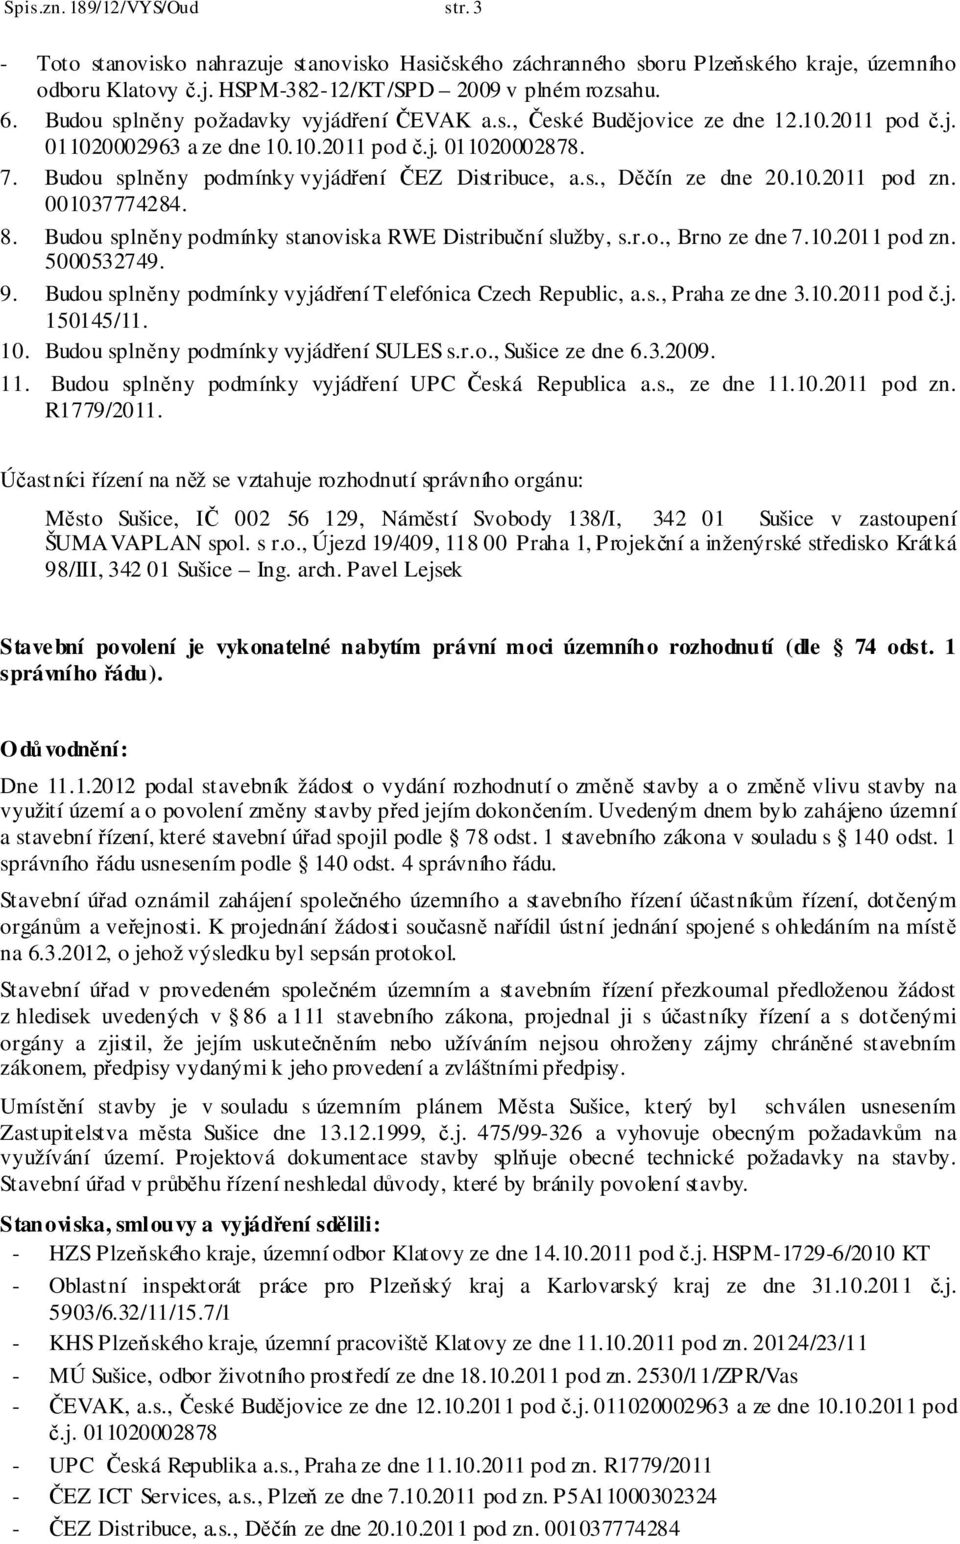 s., Děčín ze dne 20.10.2011 pod zn. 001037774284. 8. Budou splněny podmínky stanoviska RWE Distribuční služby, s.r.o., Brno ze dne 7.10.2011 pod zn. 5000532749. 9.